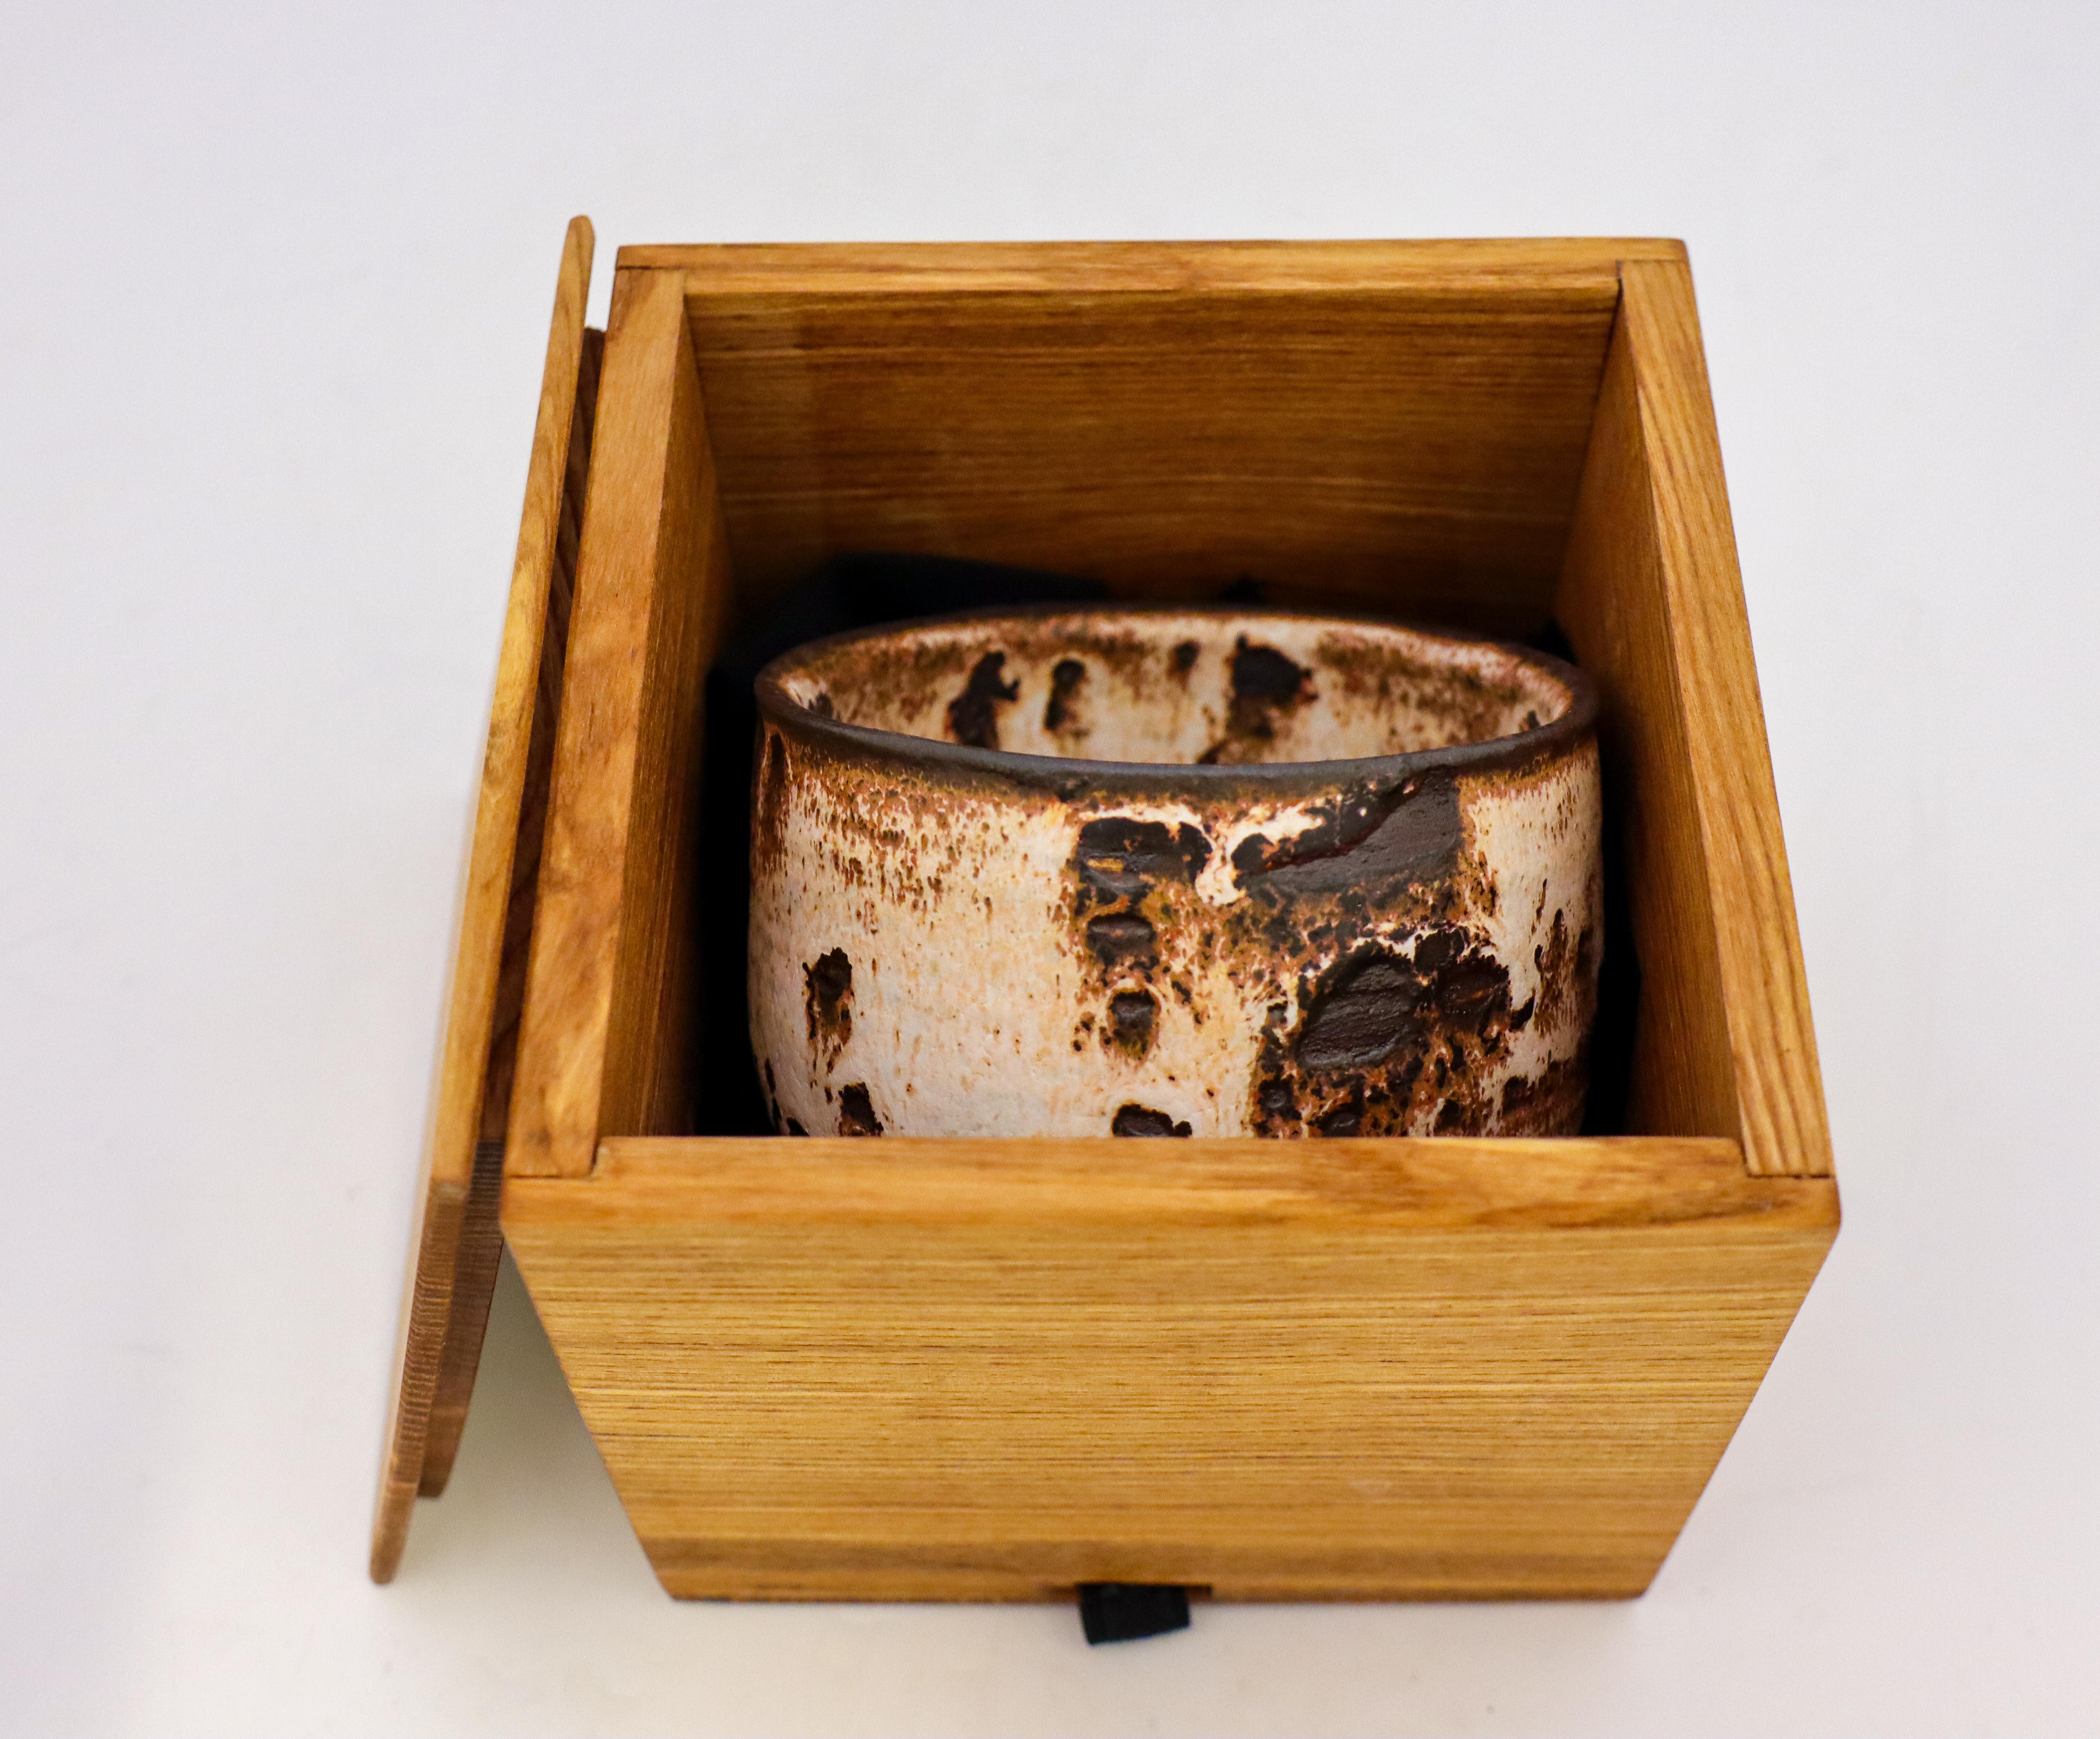 Eine schöne braun-weiße Chawan-Schale oder Teeschale mit einer Shino-Glasur, die der zeitgenössische schwedische Künstler Isak Isaksson in seinem eigenen Atelier entworfen hat. Die Schale hat einen Durchmesser von 11 cm und eine Höhe von 7 cm und